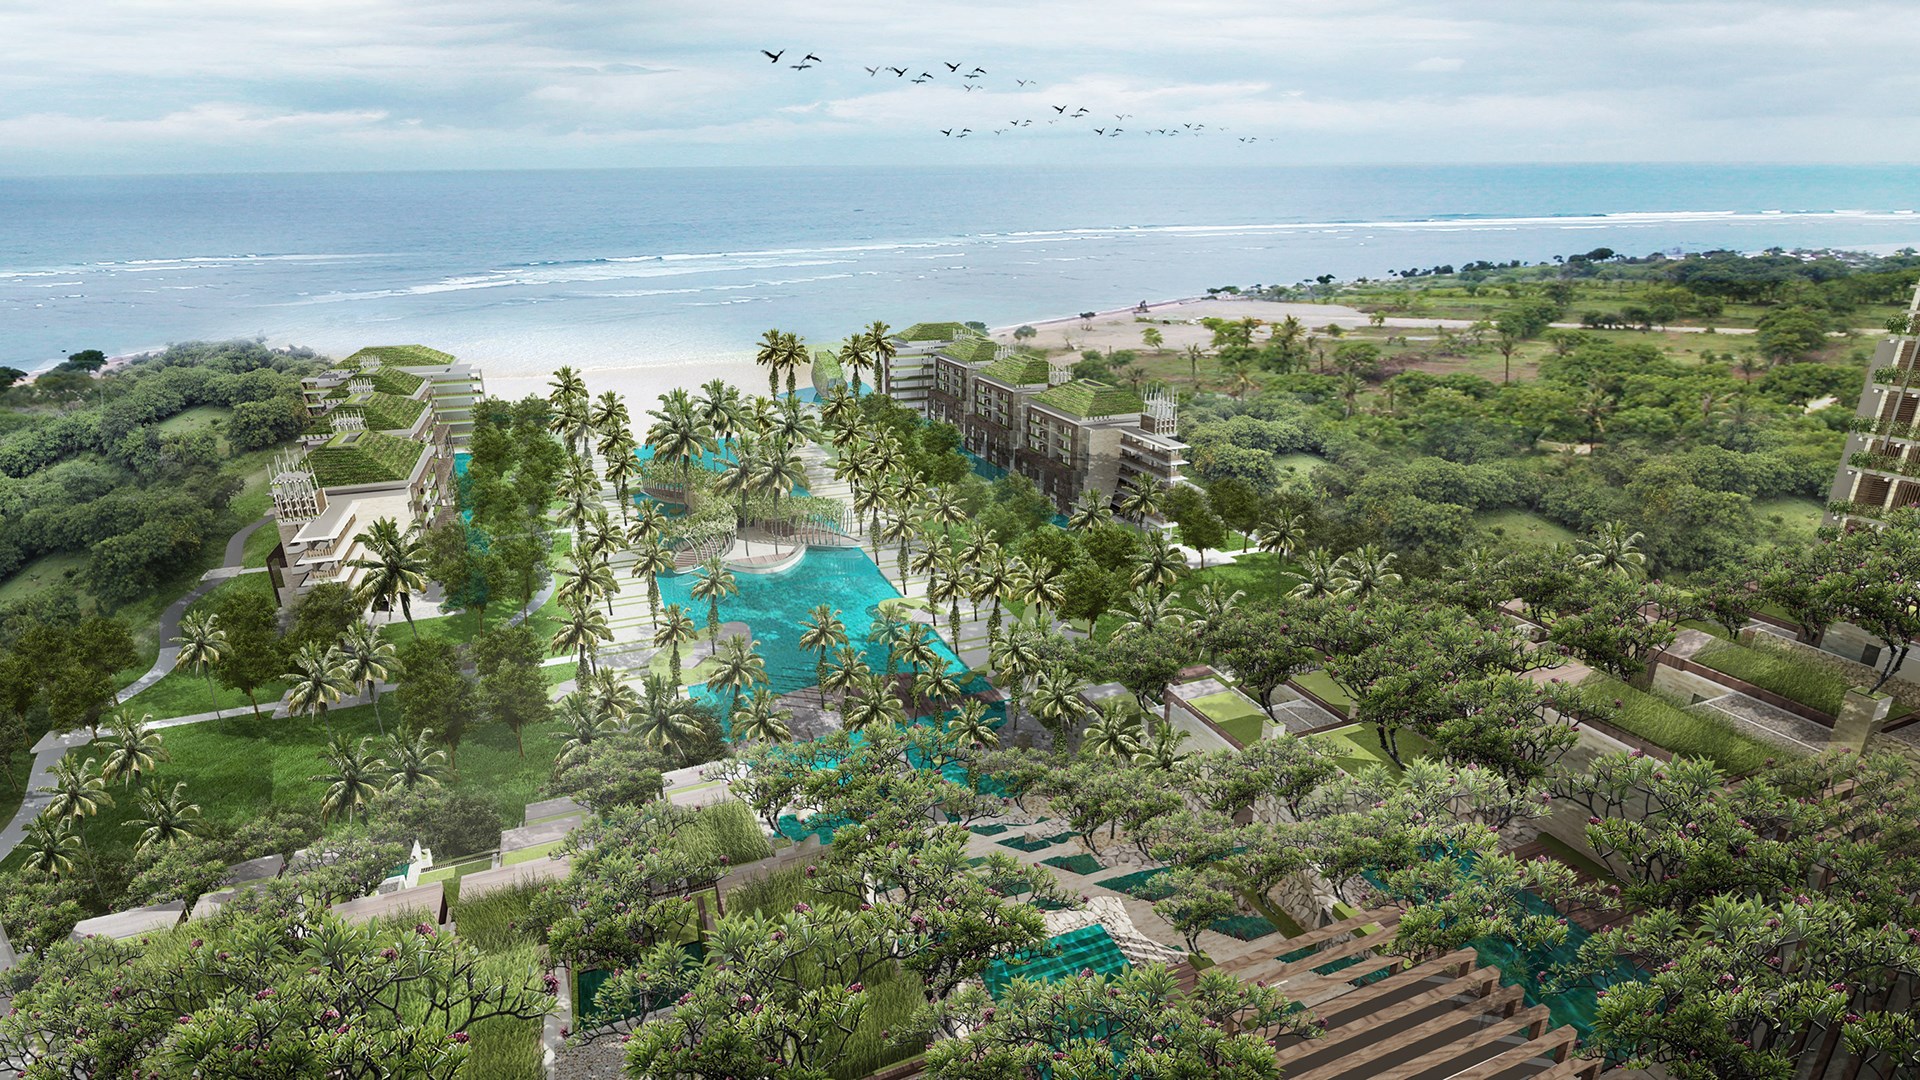 Î‘Ï€Î¿Ï„Î­Î»ÎµÏƒÎ¼Î± ÎµÎ¹ÎºÏŒÎ½Î±Ï‚ Î³Î¹Î± A New Luxury Hotel Opens in Bali: The Apurva Kempinski Bali